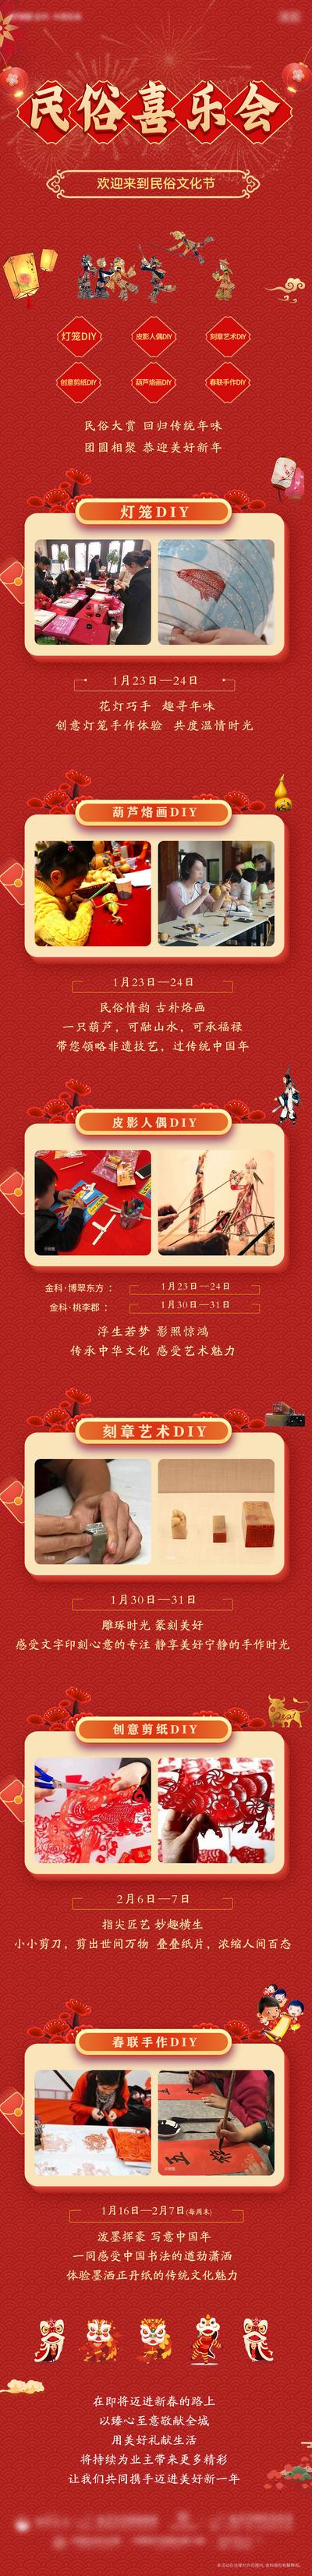 南门网 海报 长图 房地产 中国传统节日 春节 民俗 活动